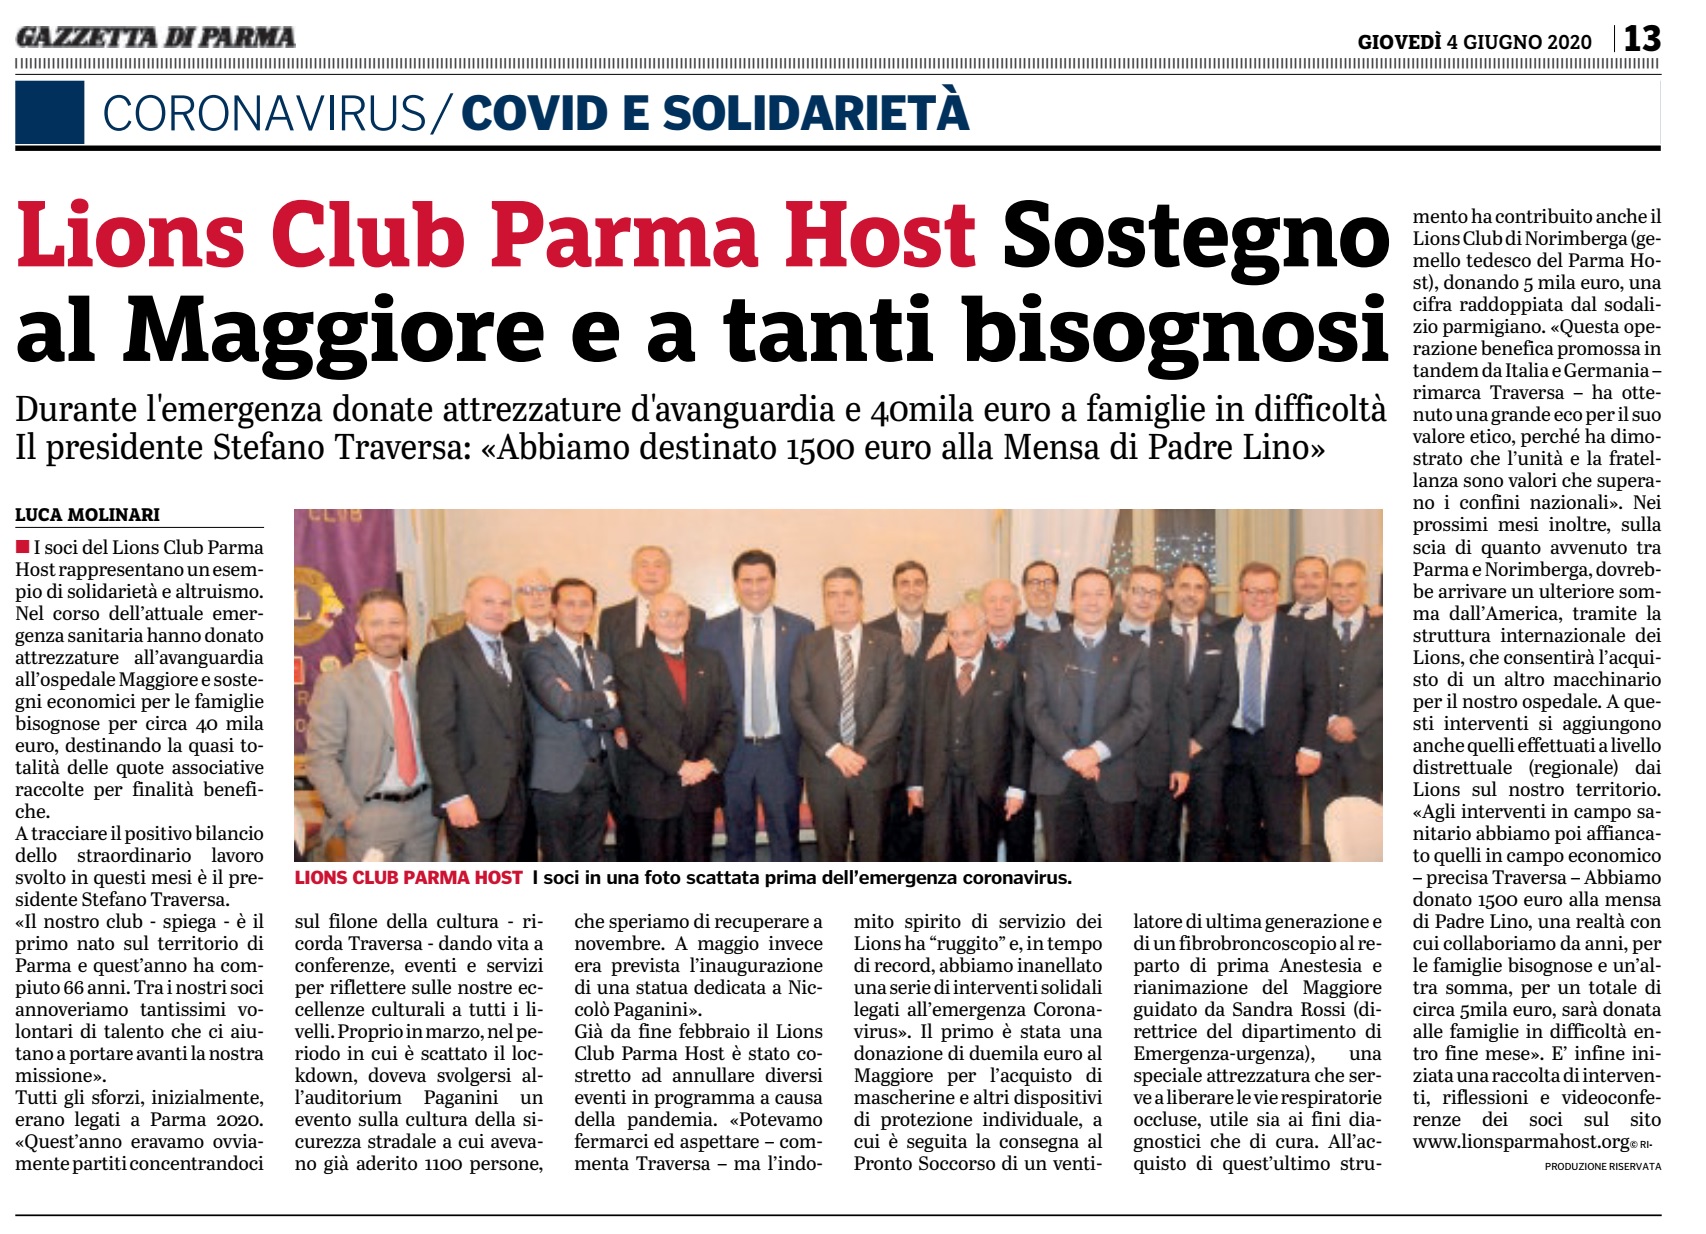 Gazzetta di Parma 04.06.2020